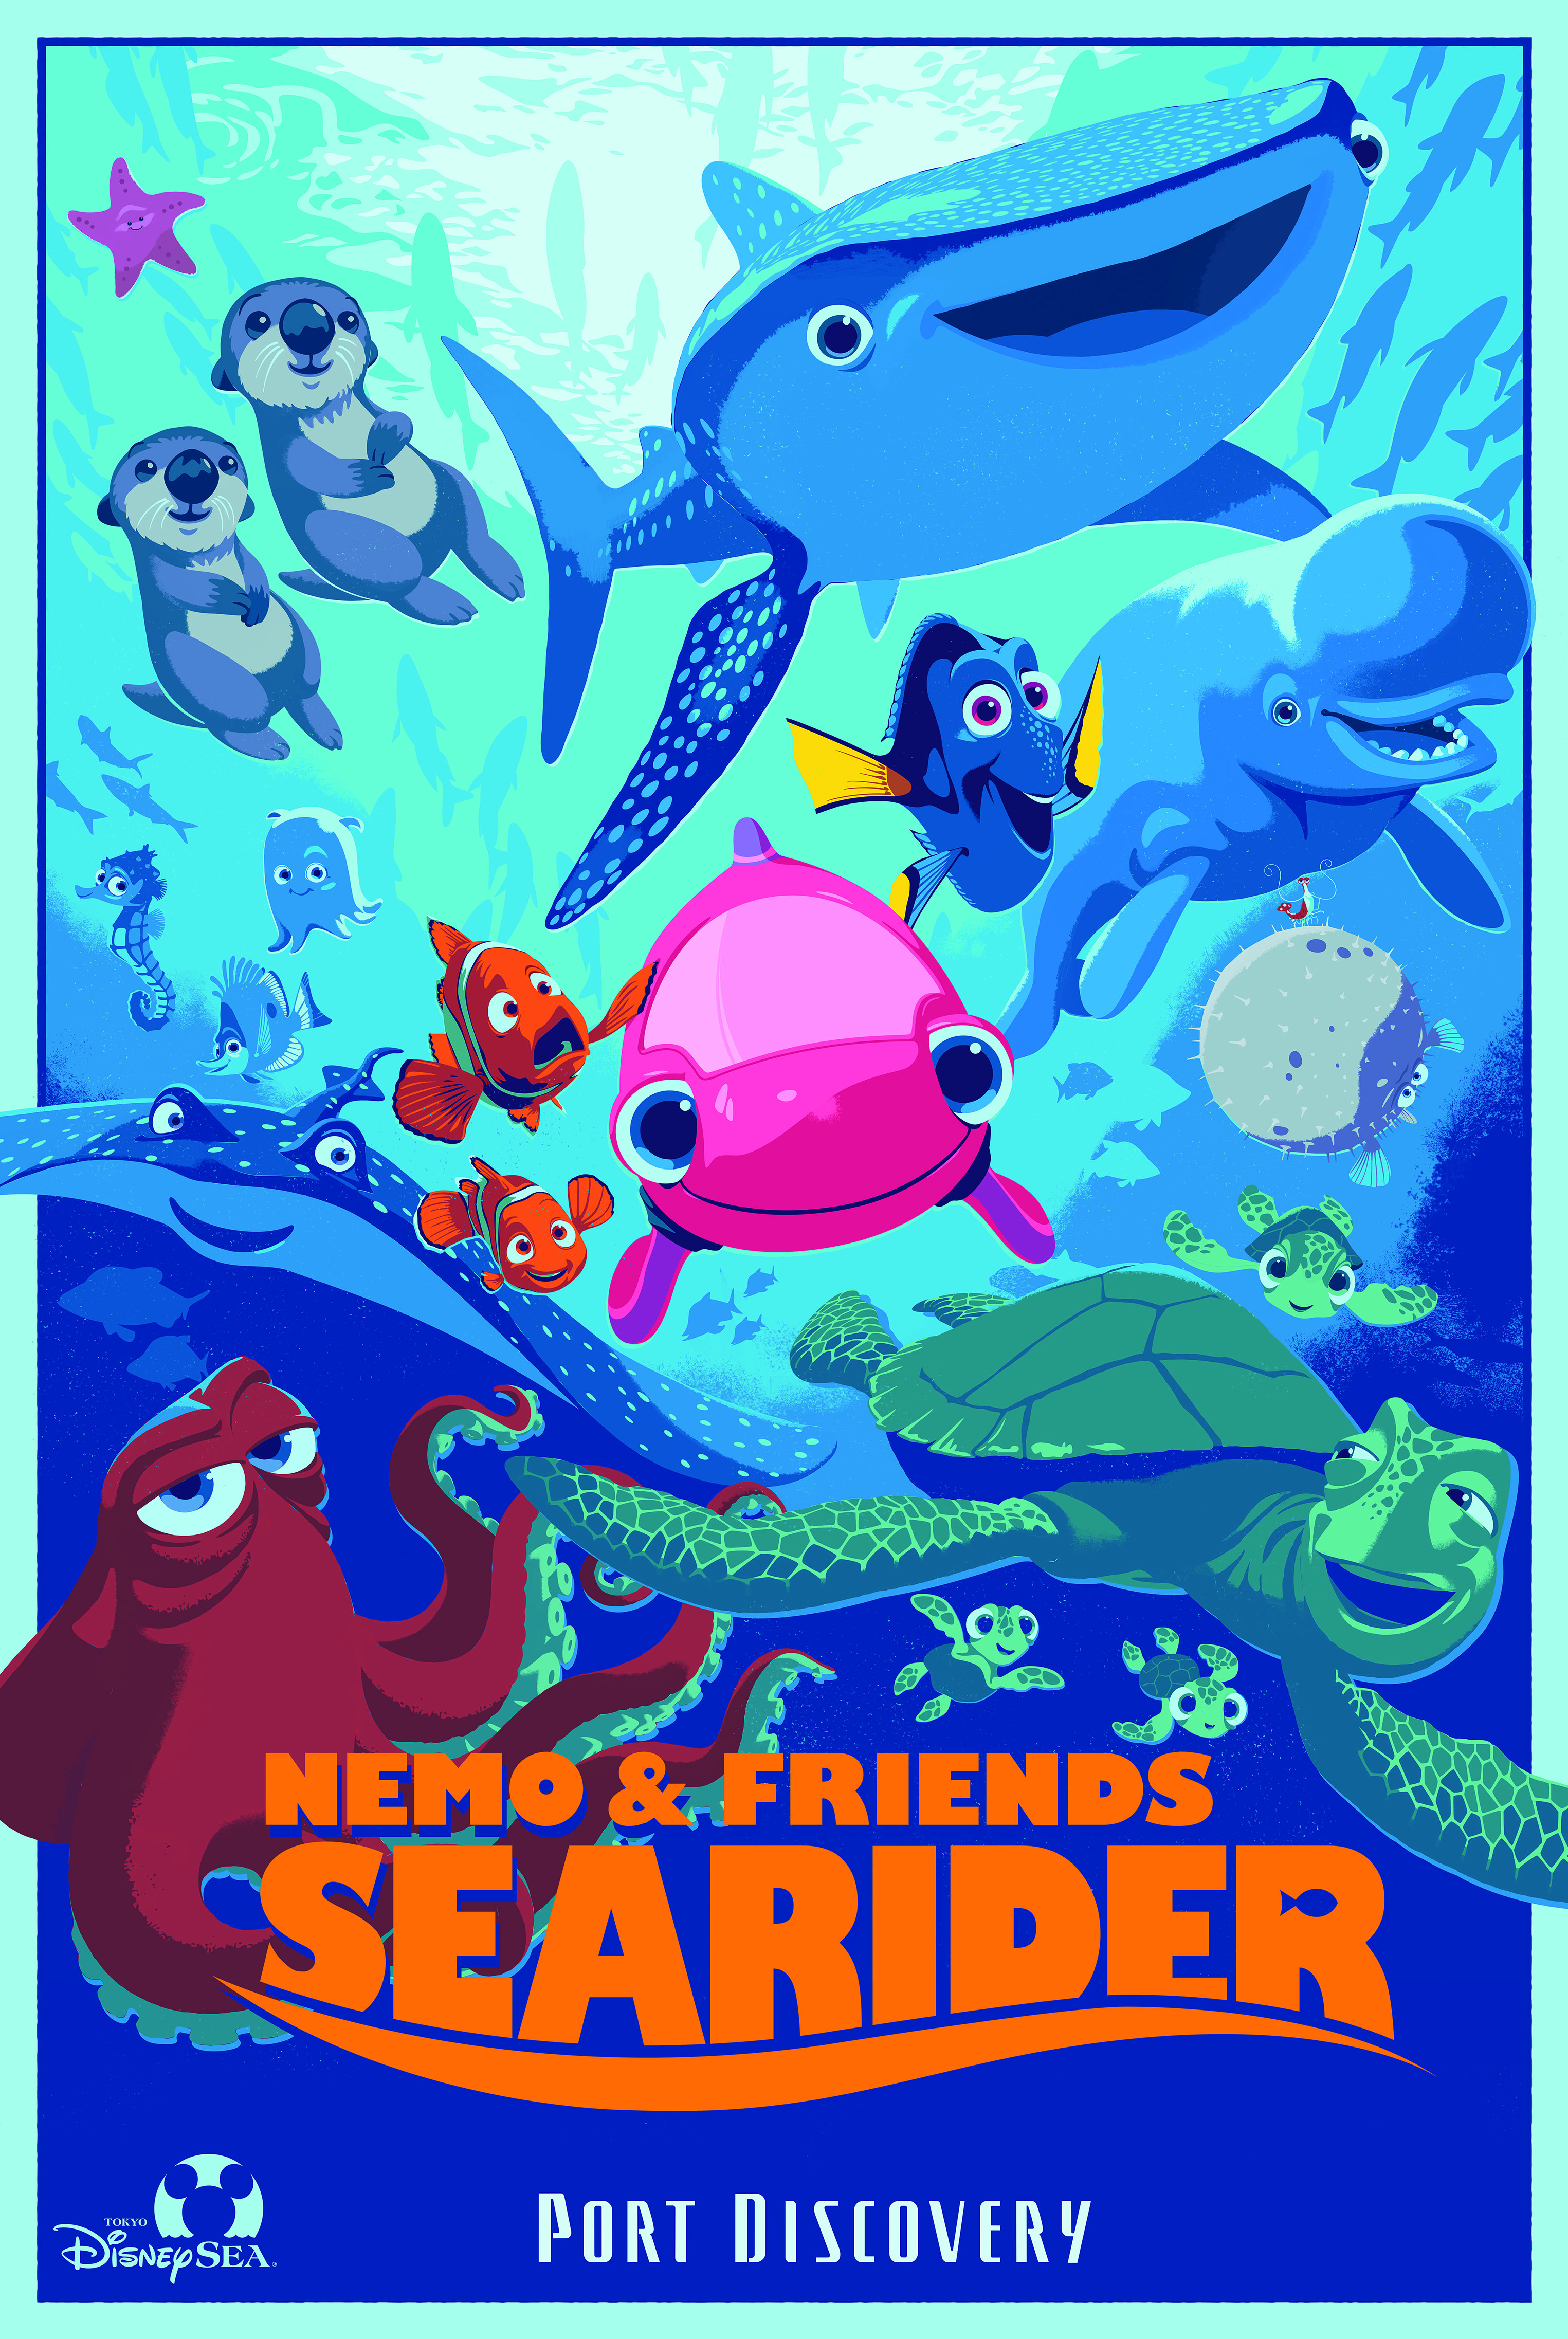 Nemo & Friends SeaRider